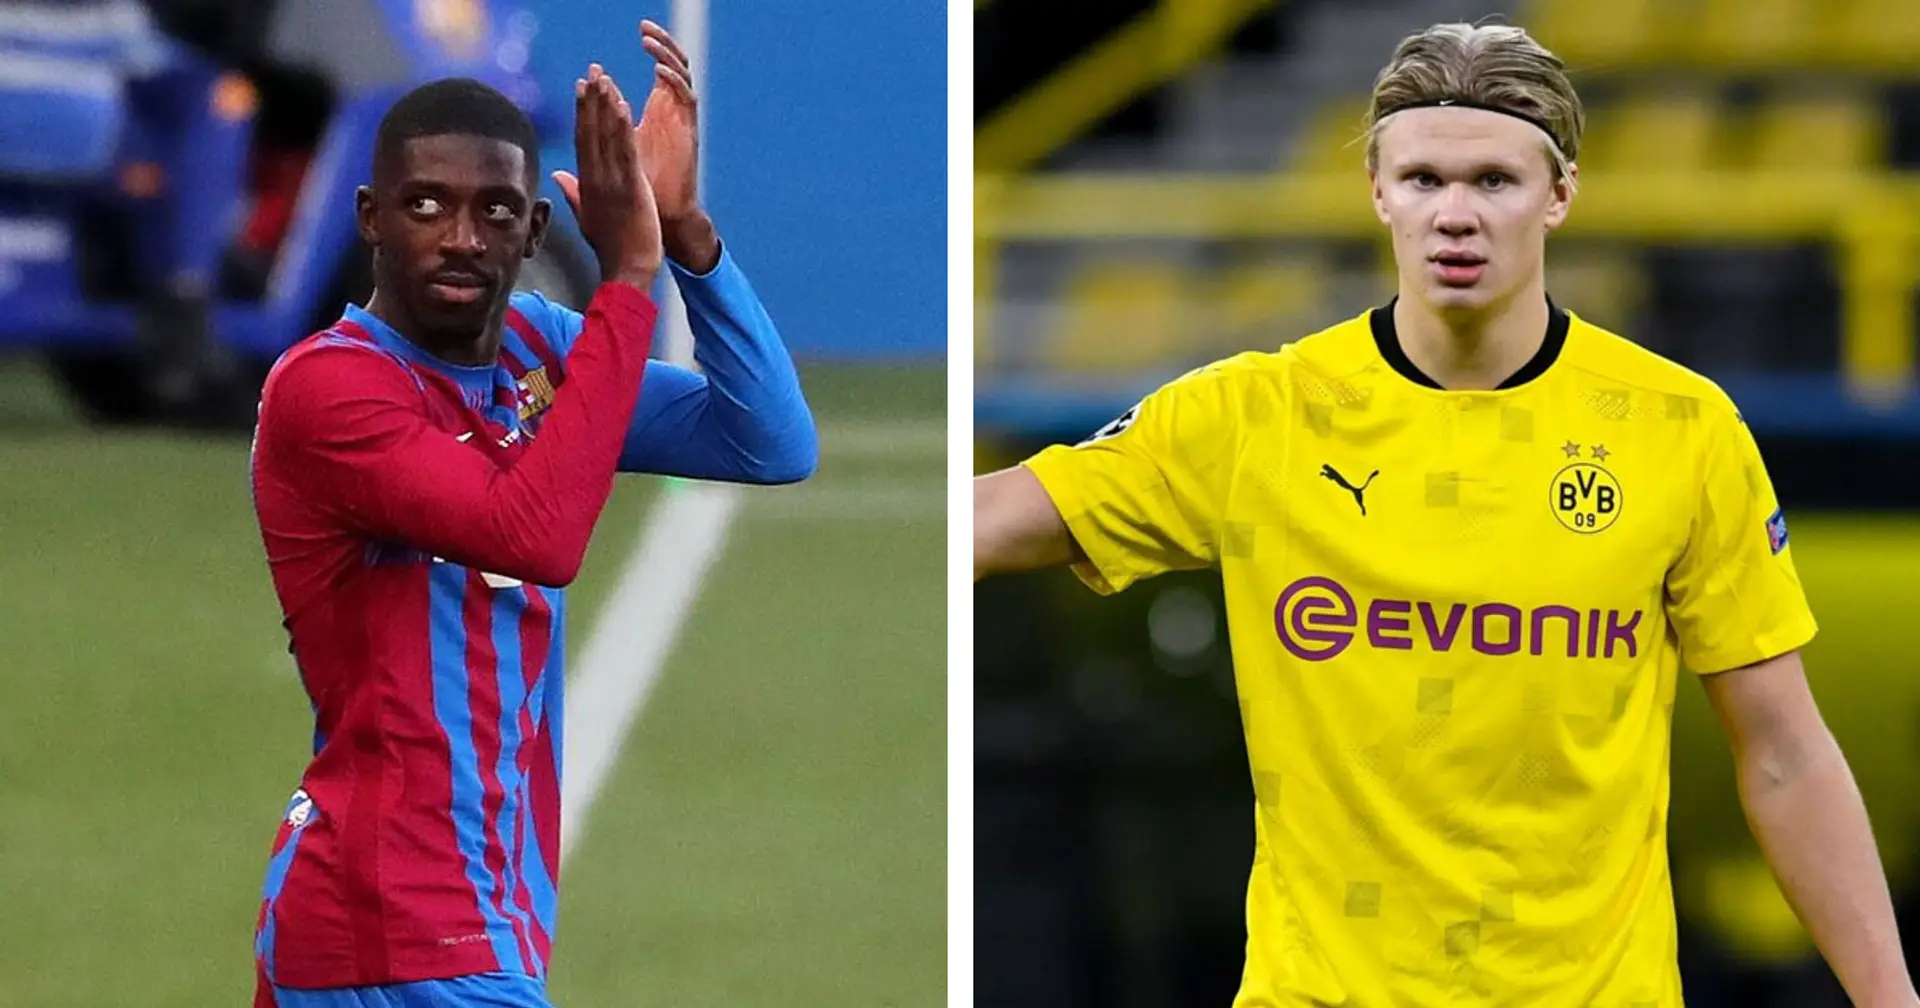 El Dortmund está listo para considerar un trueque Dembélé-Haaland el próximo verano (fiabilidad: 4 estrellas)